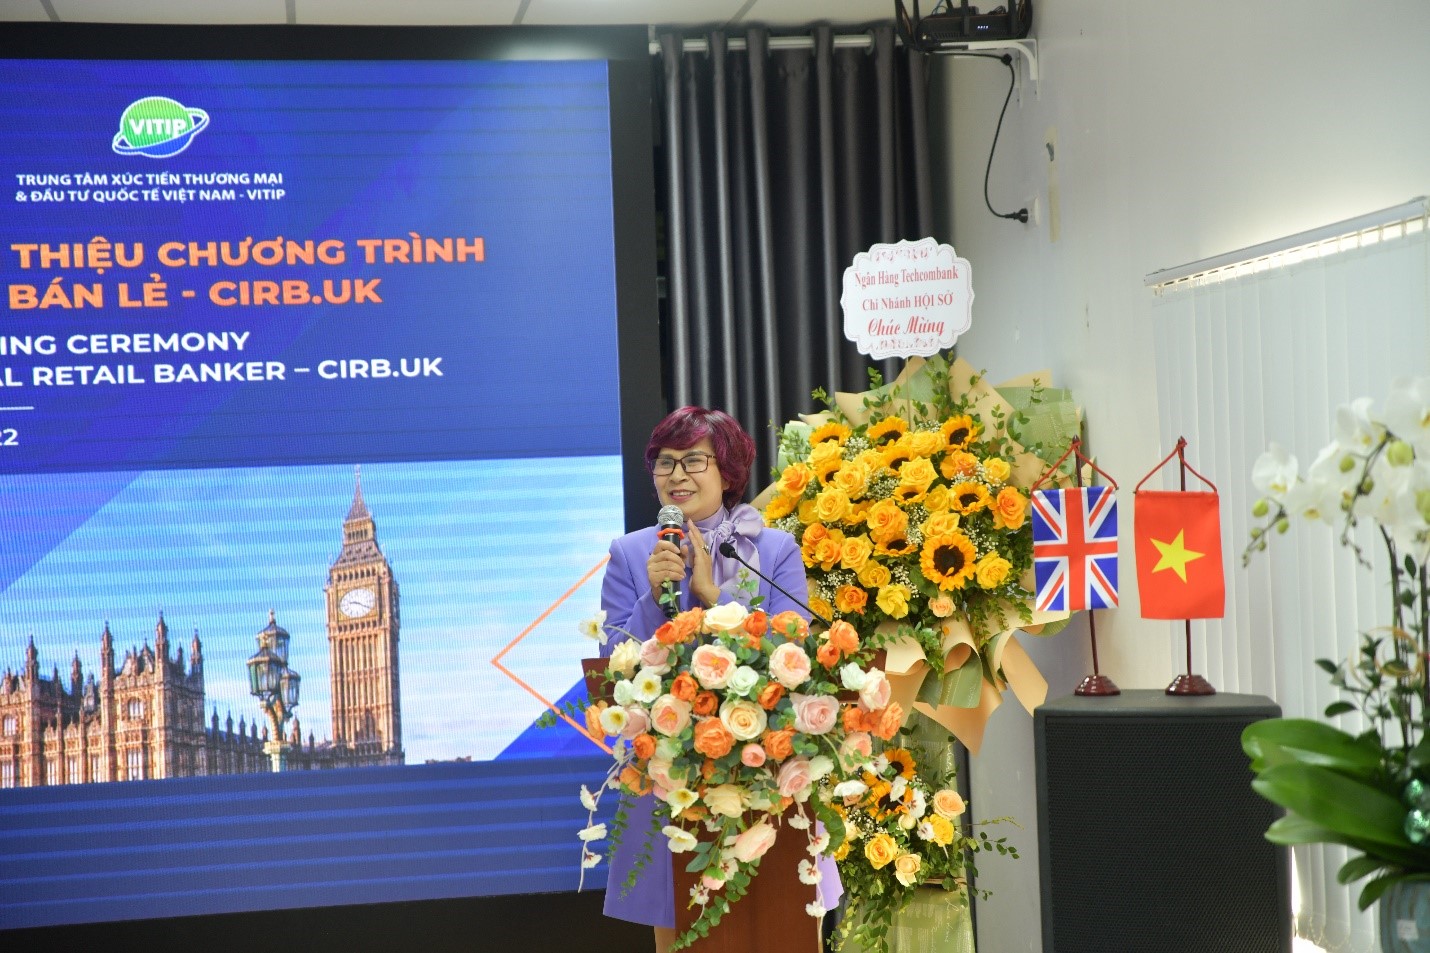 Bà Maria Nguyễn, Tổng Giám đốc VITIP